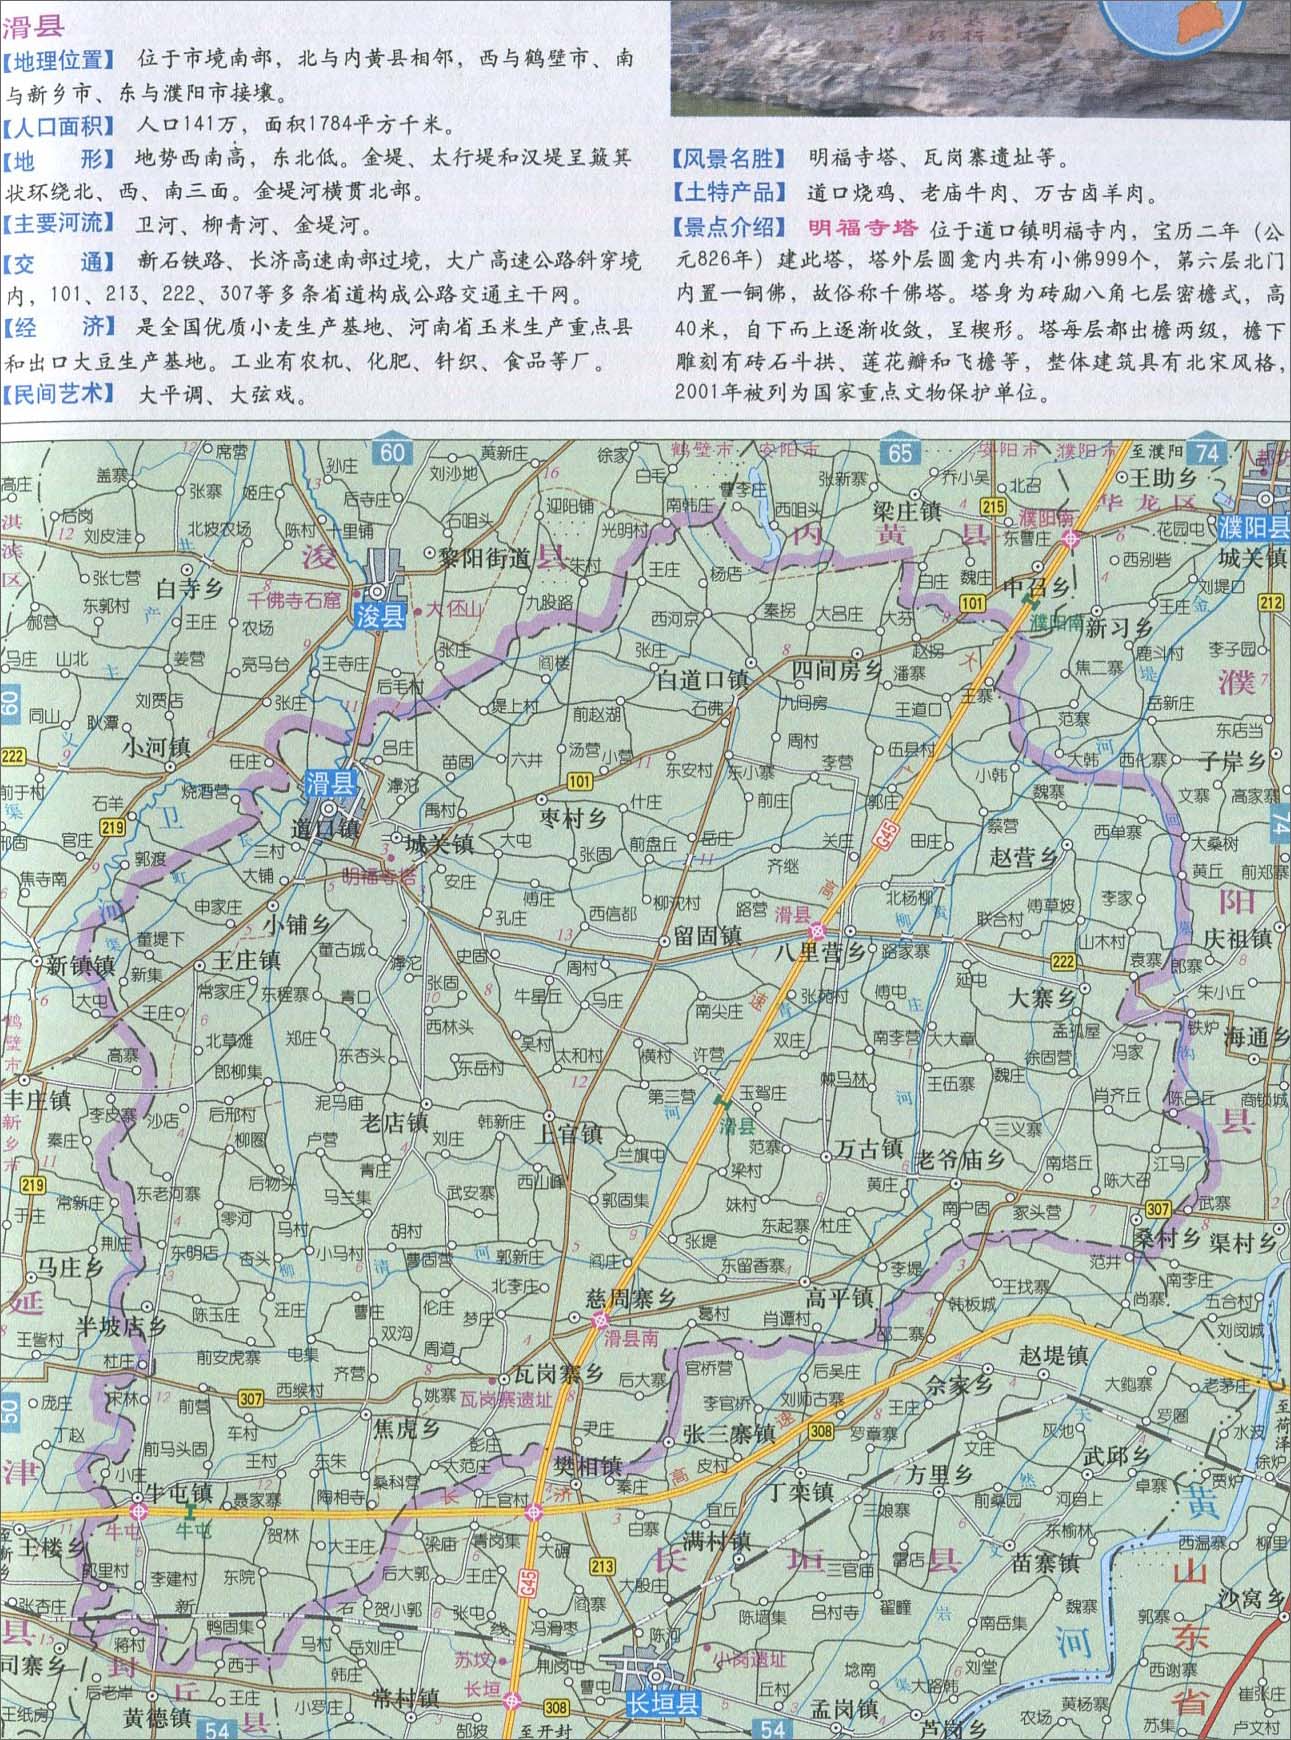 上一幅地图: 北关区地图_文峰区地图_殷都区地图_龙安区地图_安阳县